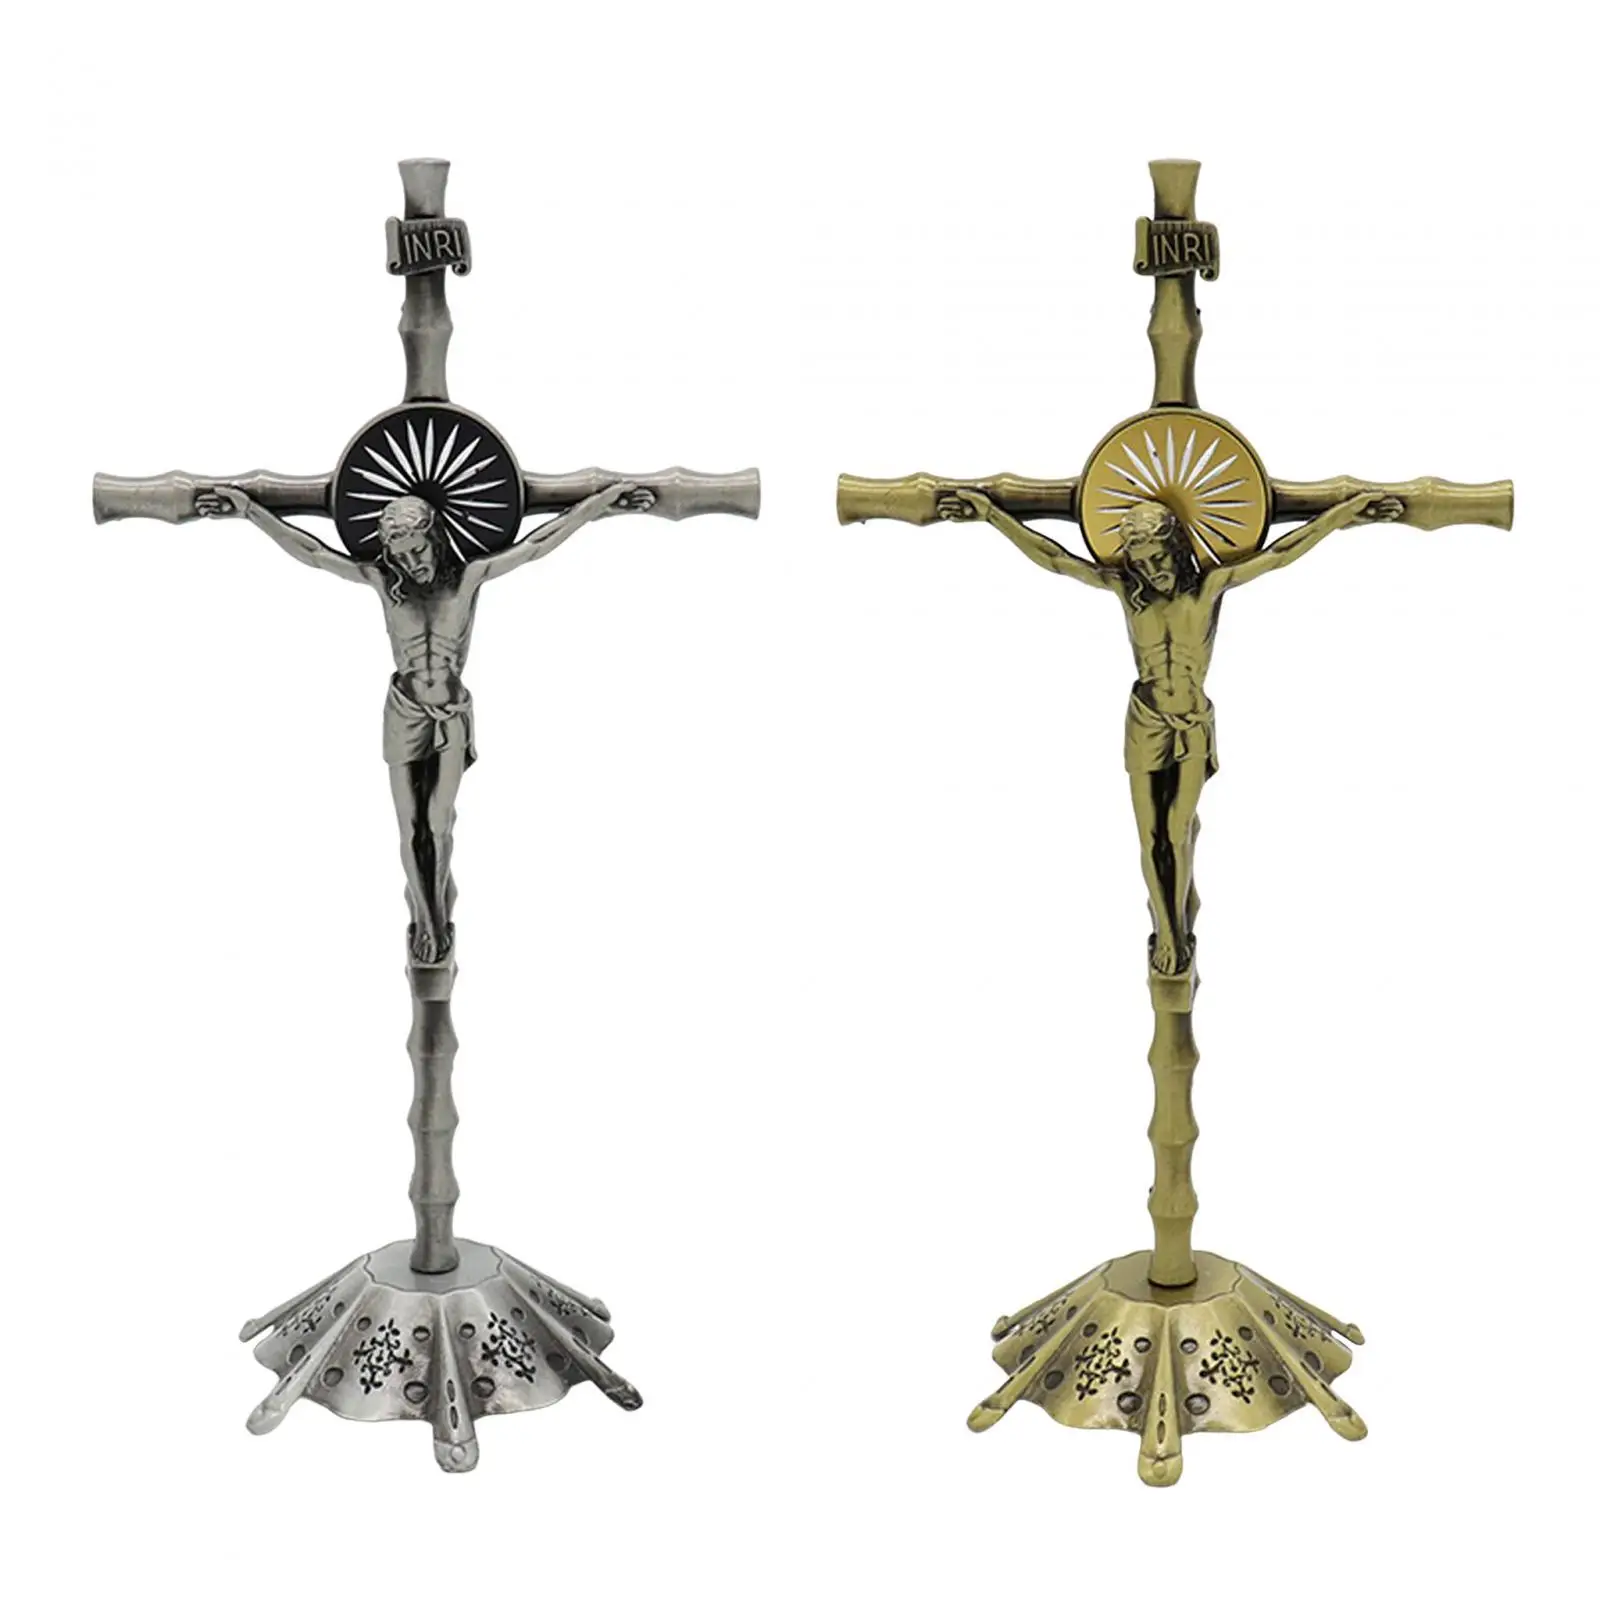 Crucifix Figurine Crucifix, Wall Cross Statue, Miniature Religious